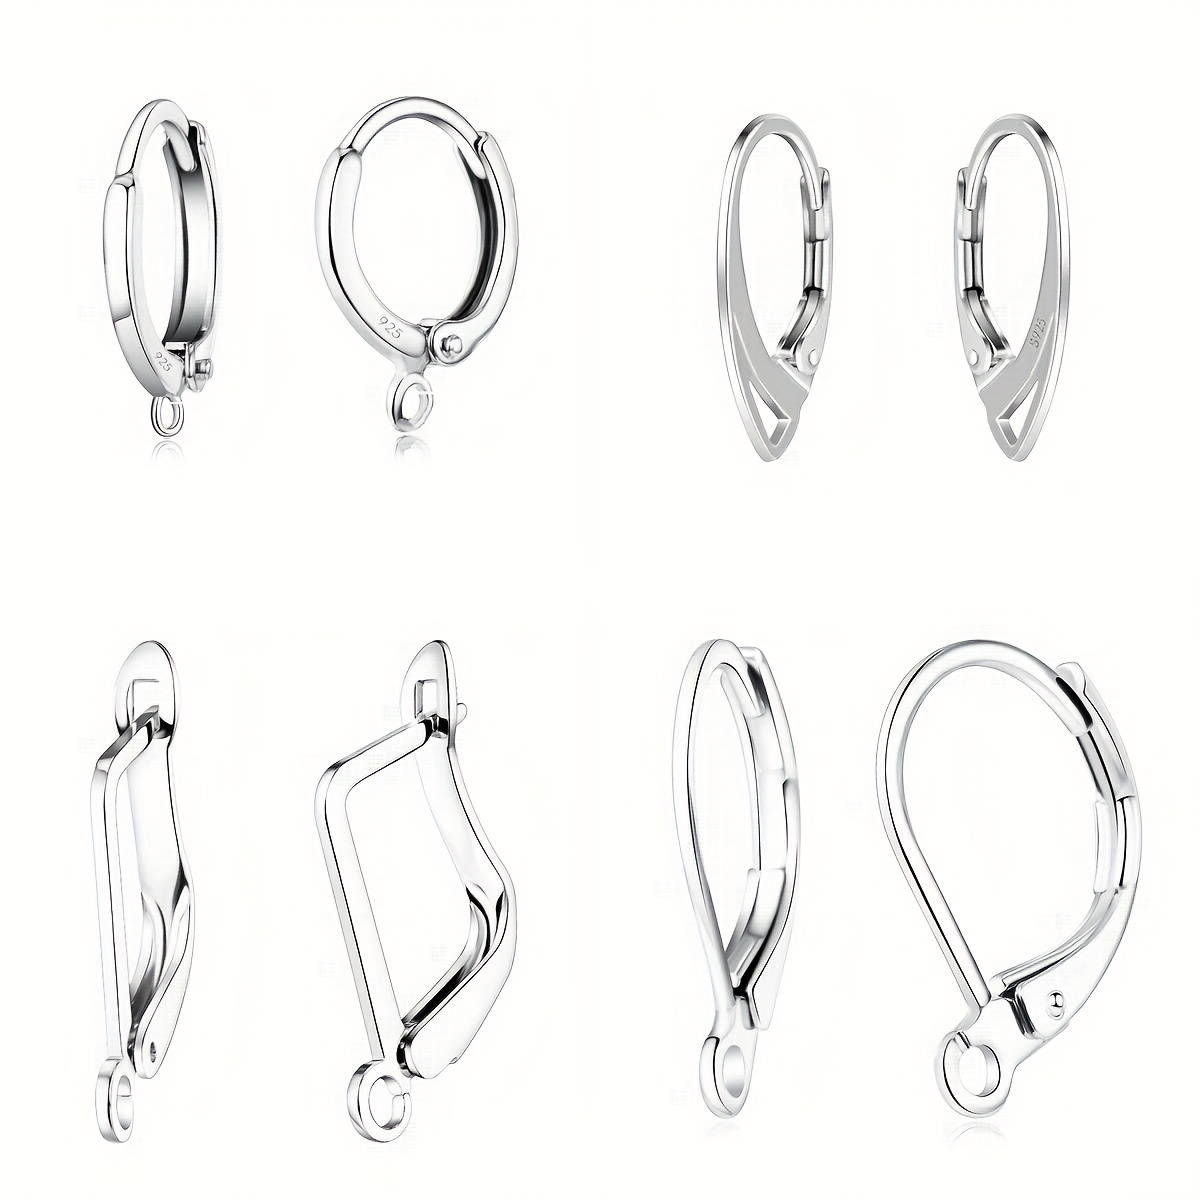 200pcs Copper Ear Wire Hook DIY Earrings Hooks Ear Stud Component Jewelry  Making